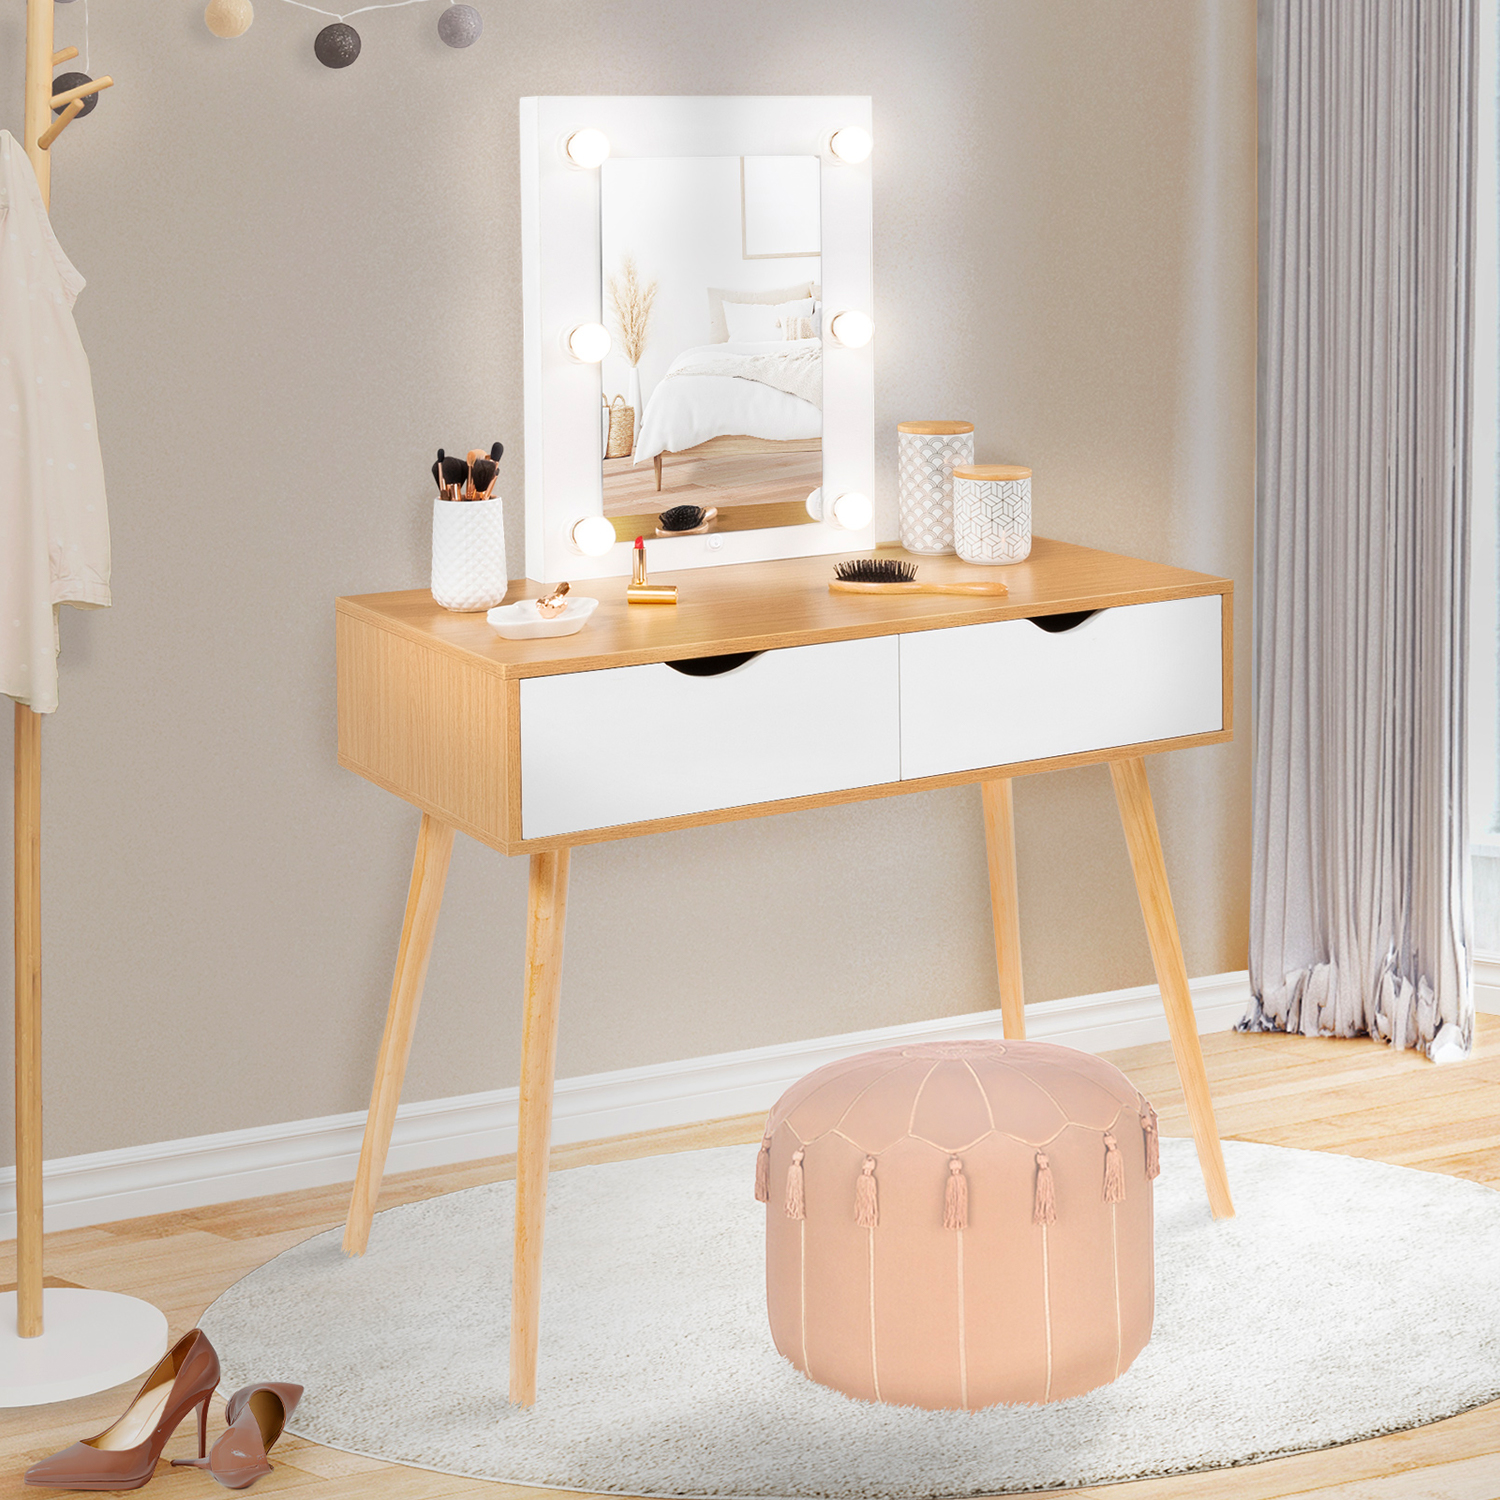 Coiffeuse scandinave blanche et bois avec tiroirs et miroir LED - LIVIA